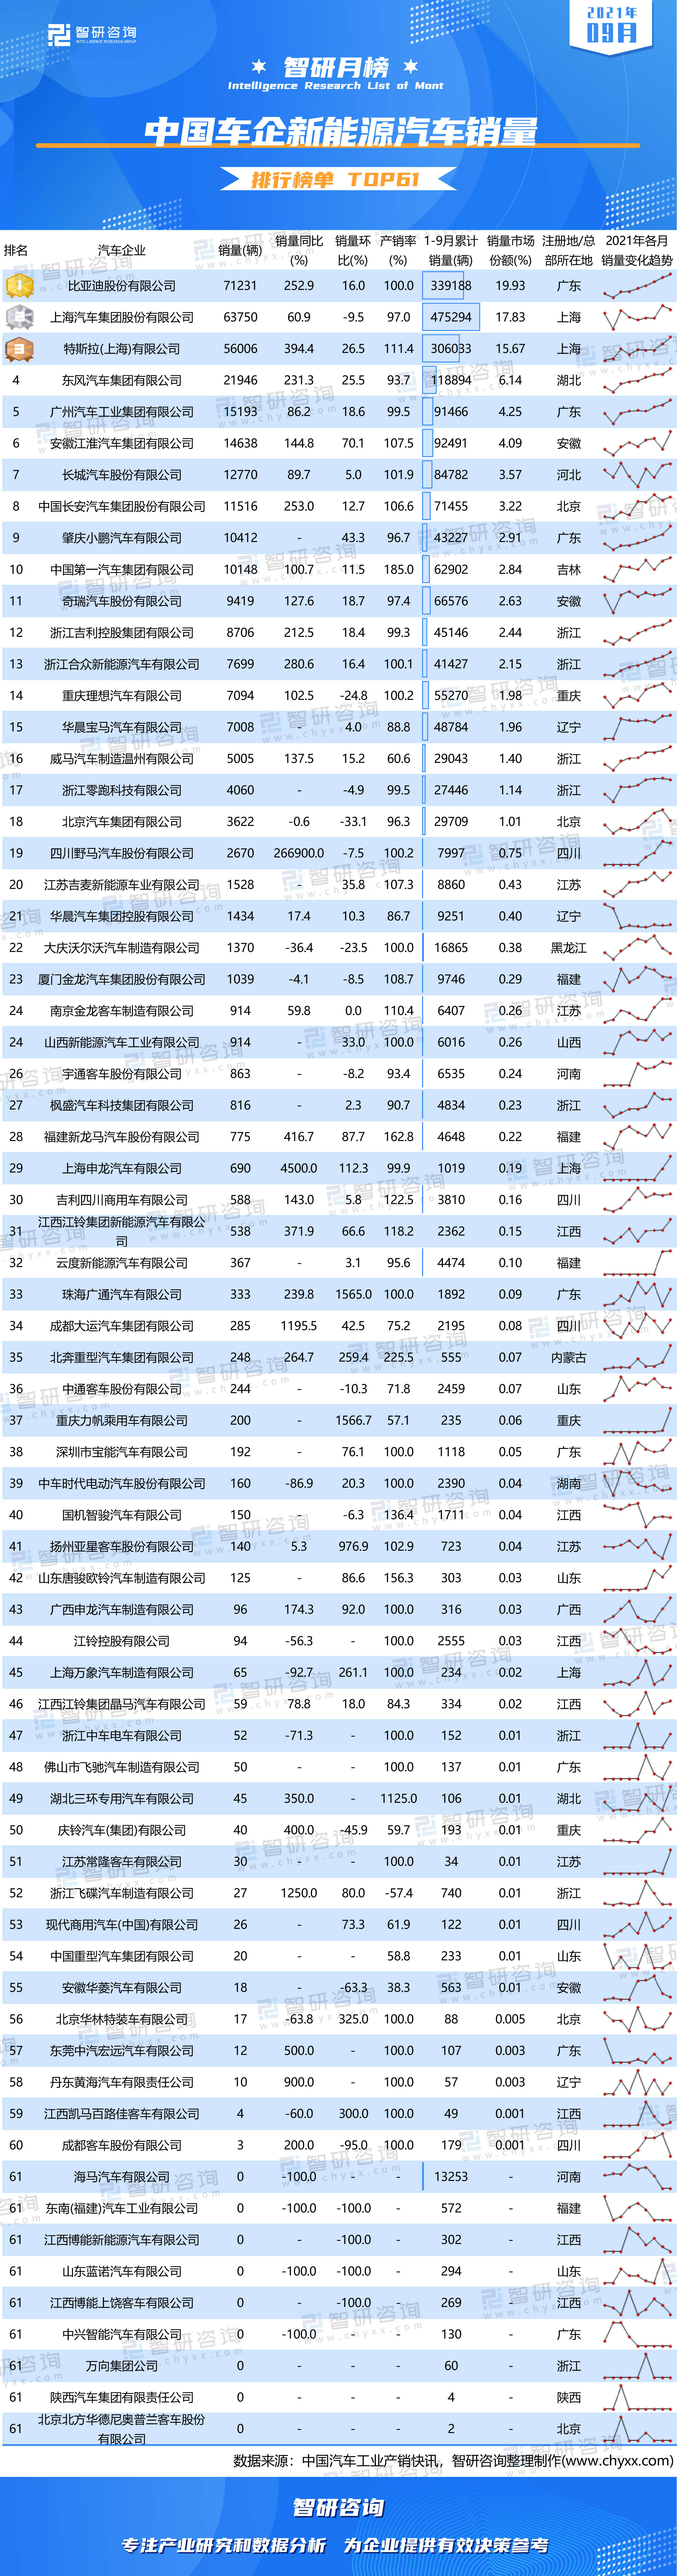 中国客车销量排行榜_2021年9月中国汽车发动机生产企业销售量排行榜(附月榜TOP58详单)